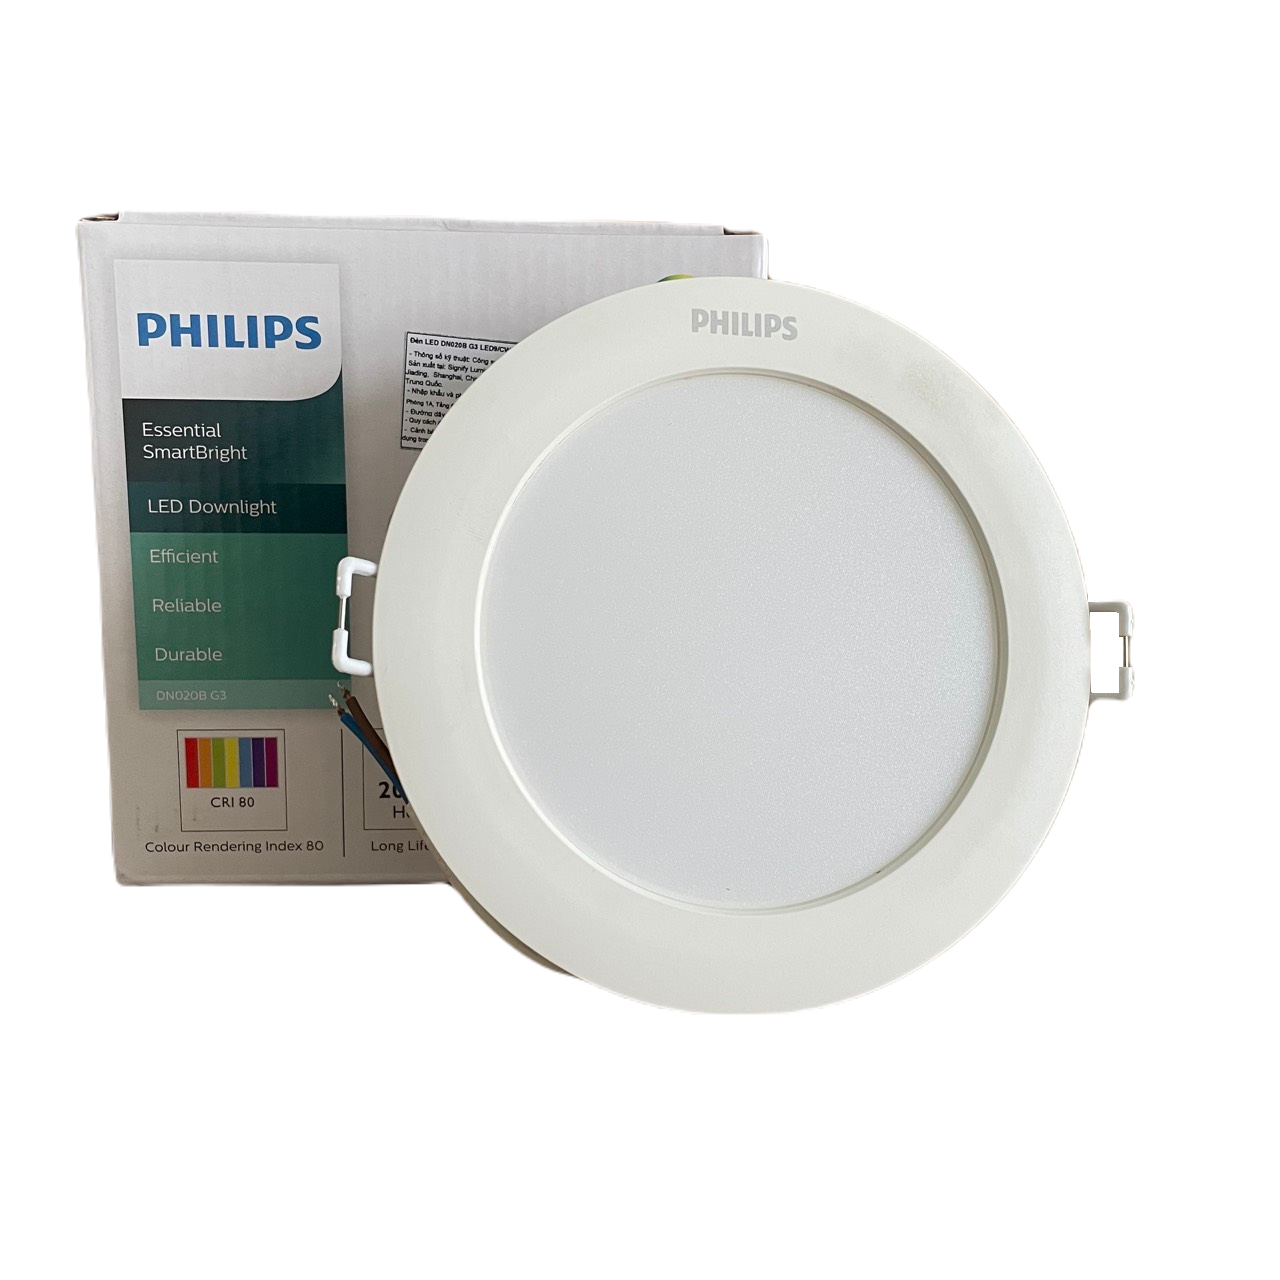 Đèn downlight âm trần LED Philips Essential SmartBright DN020B G3 LED9/CW 10.5W 220-240V D150 GM